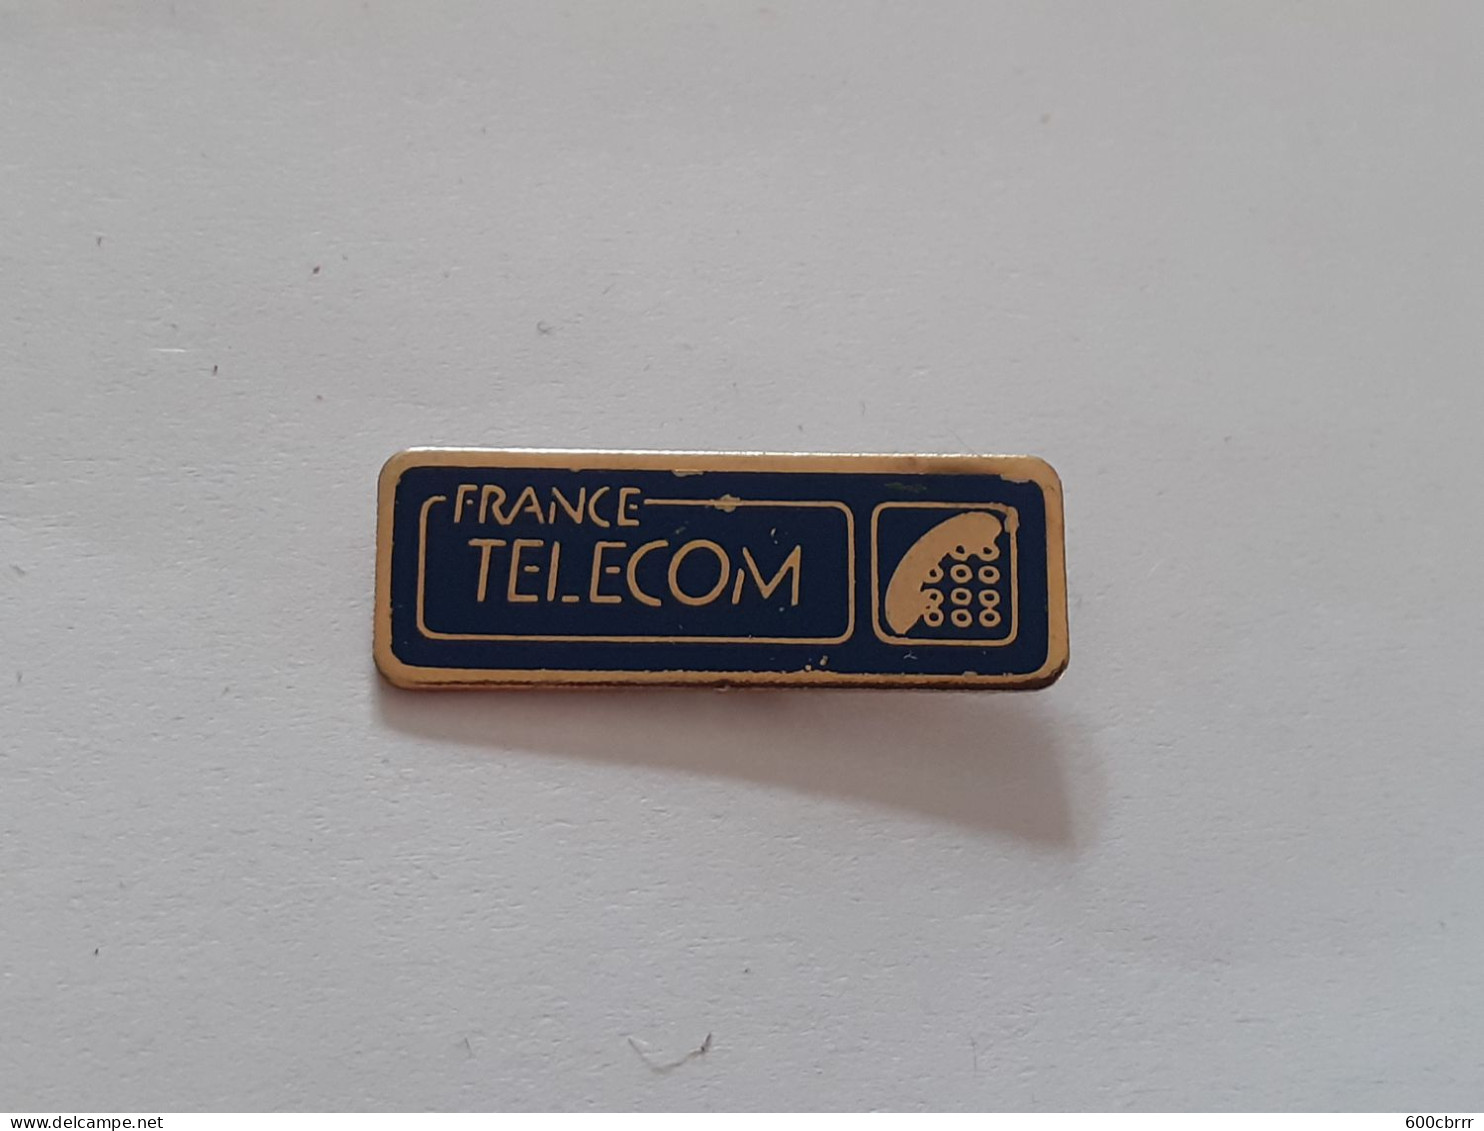 Pins France Telecom - France Telecom